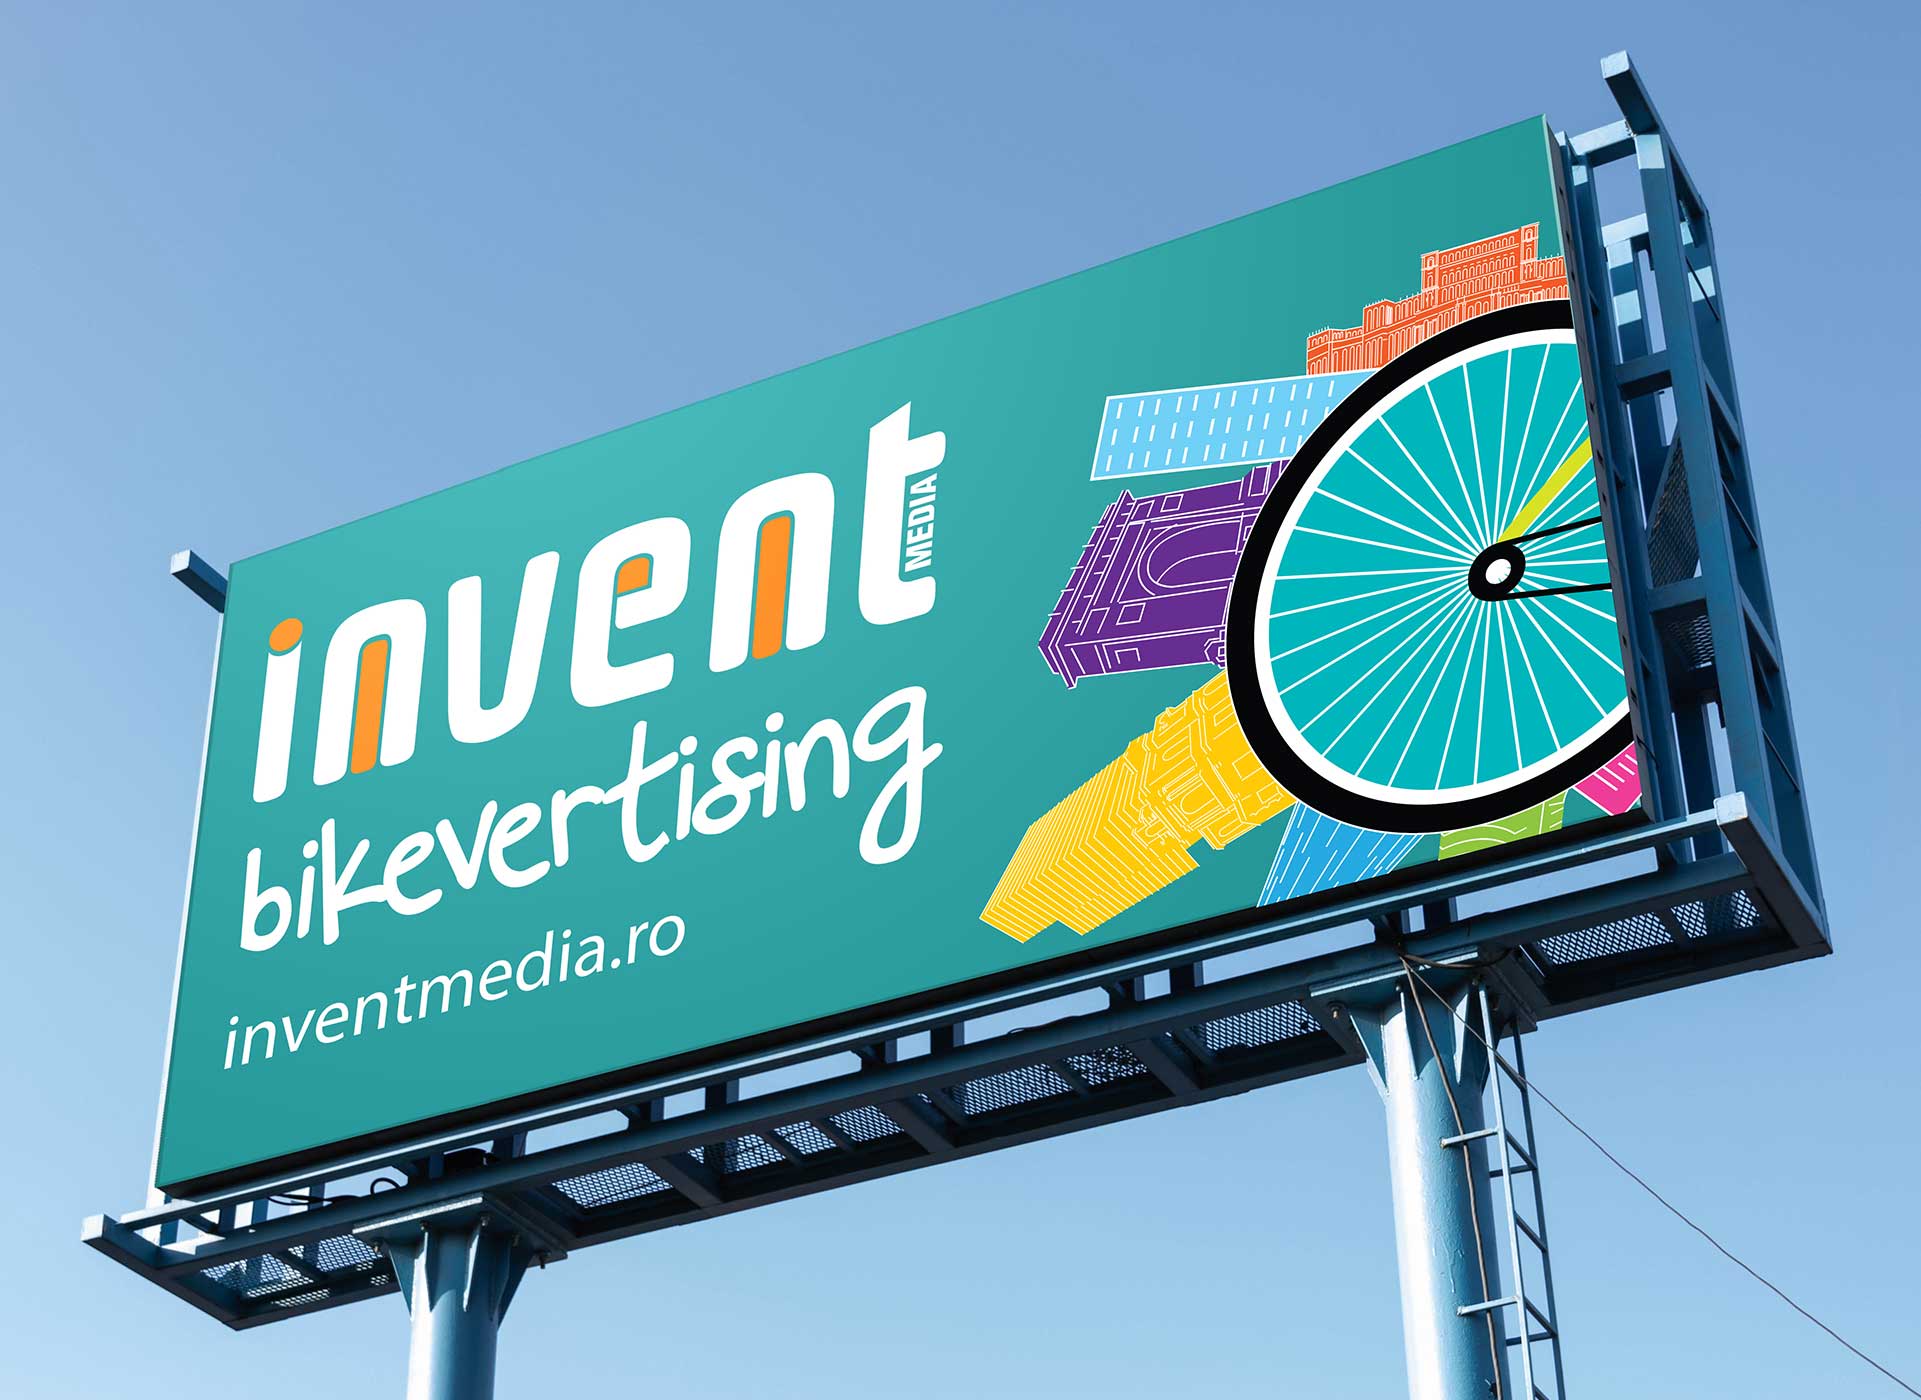 bikevertising outdoor banner